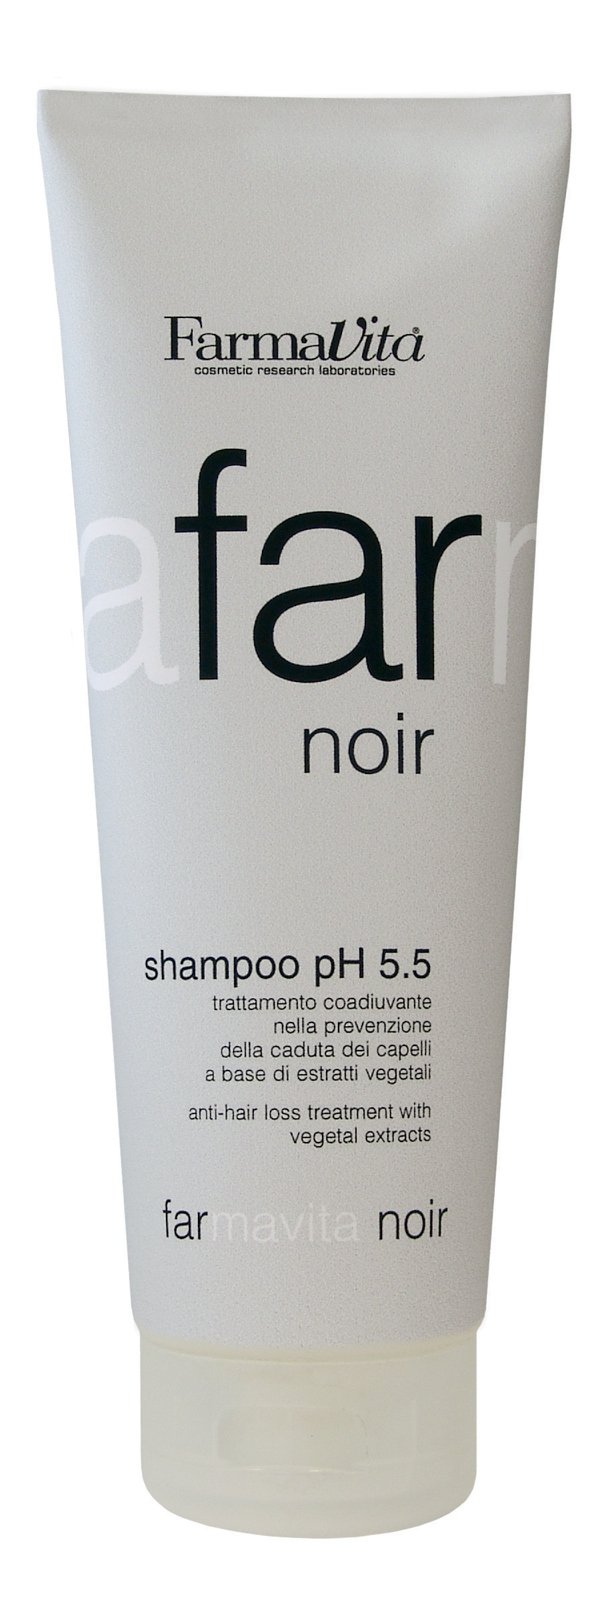 Шампуни для волос:  FarmaVita -  Специальный шампунь для мужчин против выпадения волос FarmaVita Noir Shampoo pH 5.5 (250 мл) (250 мл)